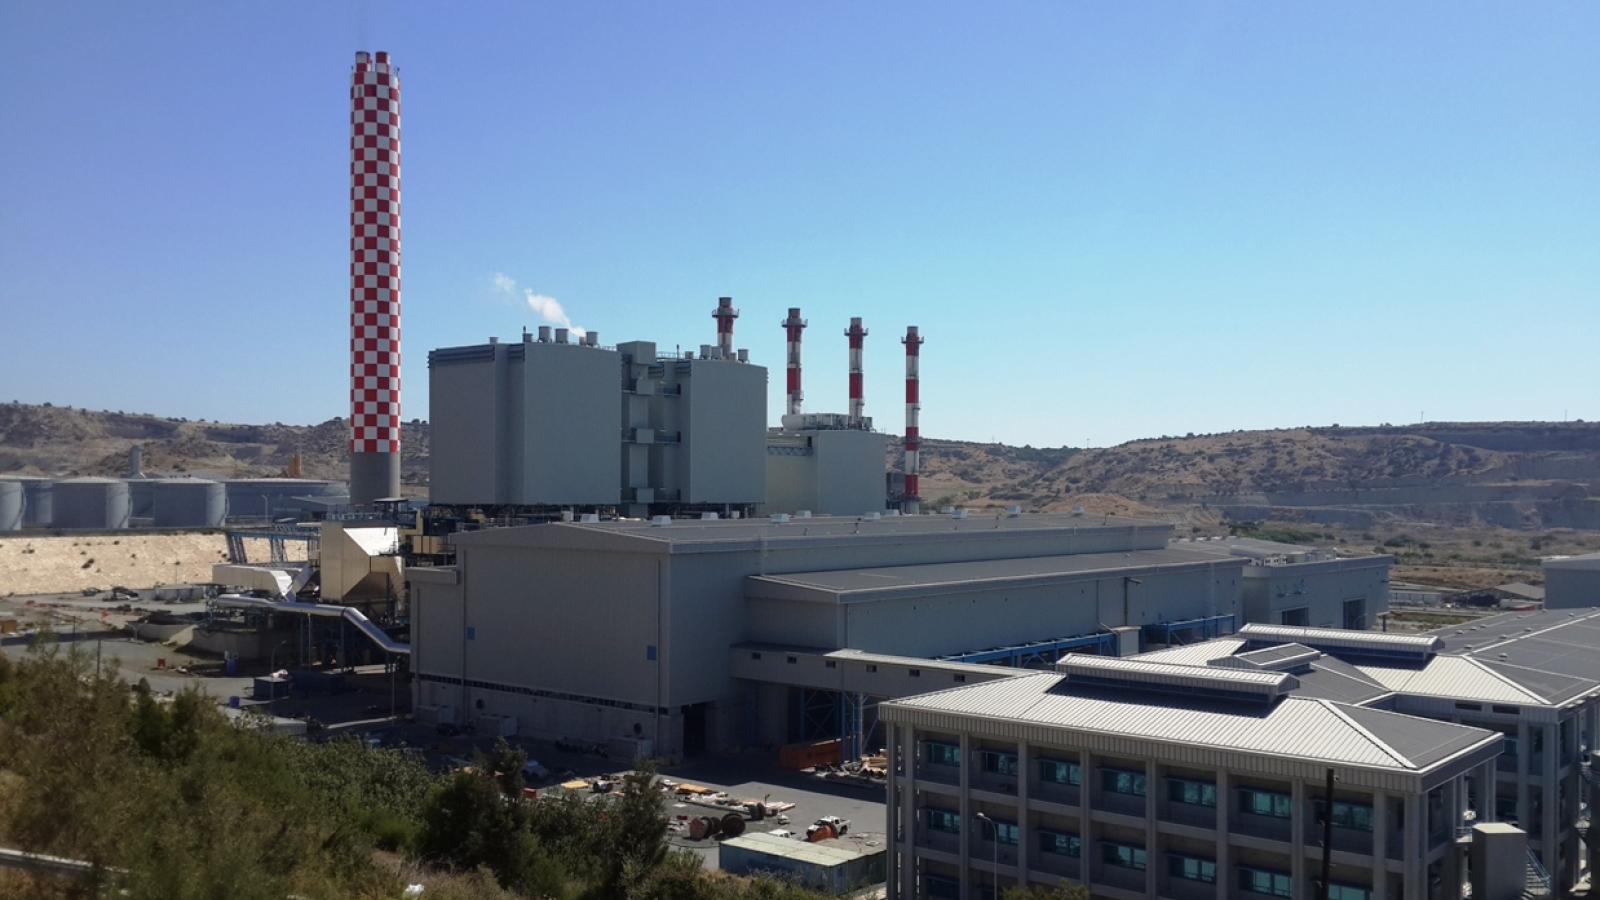 Det rehabiliterte Vasilikos kraftverk (2013). Kraftverket produserer to tredjedeler av republikkens strømforsyning ved hjelp av diesel og tungolje. Det ble satt ut av drift som følge av eksplosjonen på den nærliggende marinebasen ved Mari i 2011. Eksplosjonen krevde 13 menneskeliv og skapte en stor energikrise.
Kraftlinjene mellom Nord-Kypros og Republikken Kypros ble gjenåpnet for å avhjelpe situasjonen, noe som i en kortere periode bidro til et visst tøvær i det ellers fastfrosne forholdet mellom det gresktalende sør og det tyrkiskspråklige nord. 